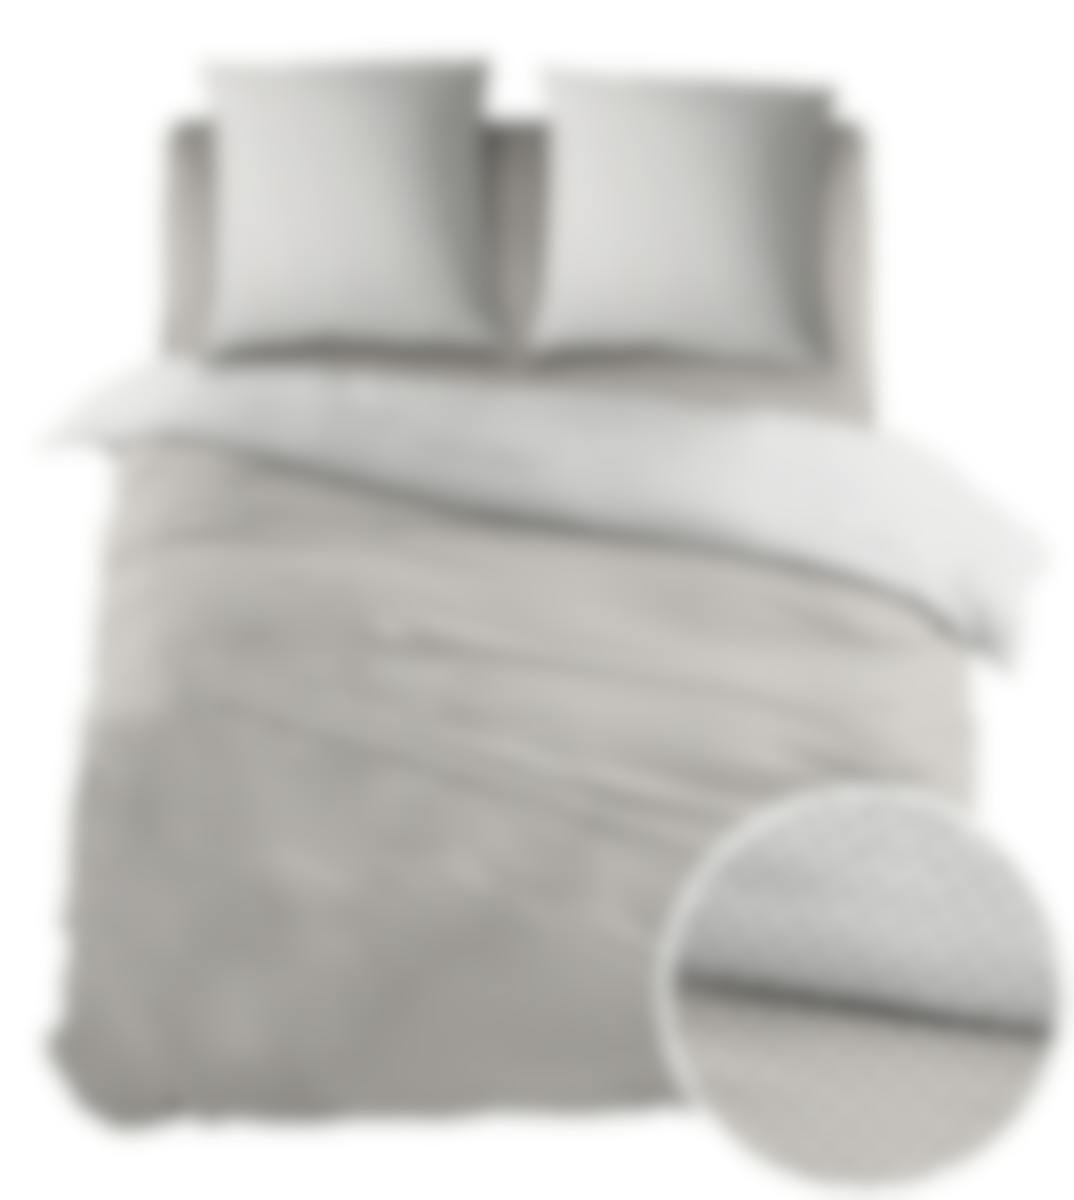 Sleepnight housse de couette Pierrot Taupe Coton 240 x 200-220 cm